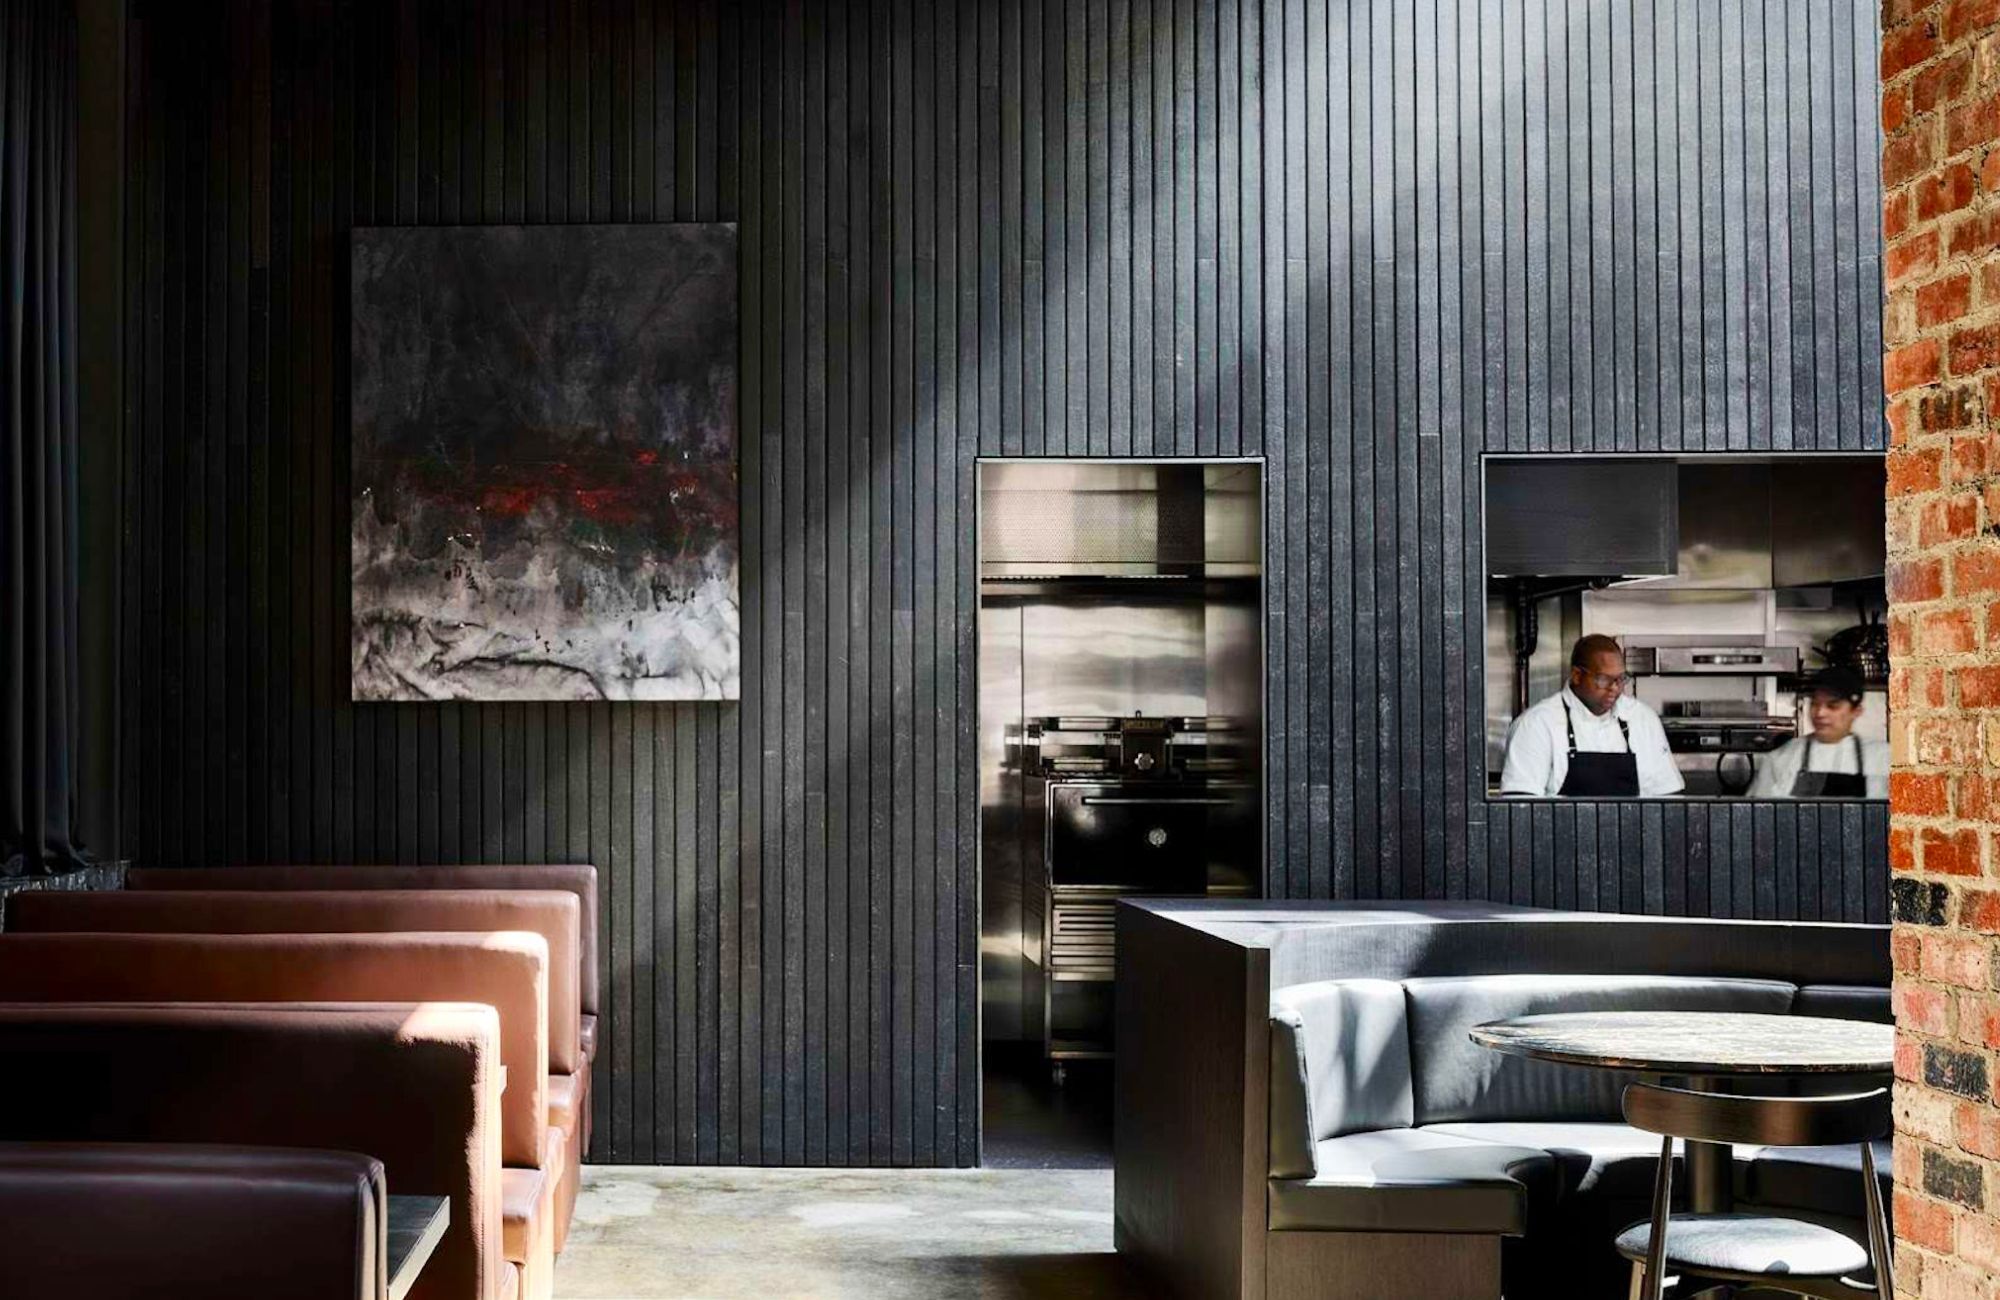 Saint Hotel by Telha Clarke Architecture & Design showing dark interior of restaurant